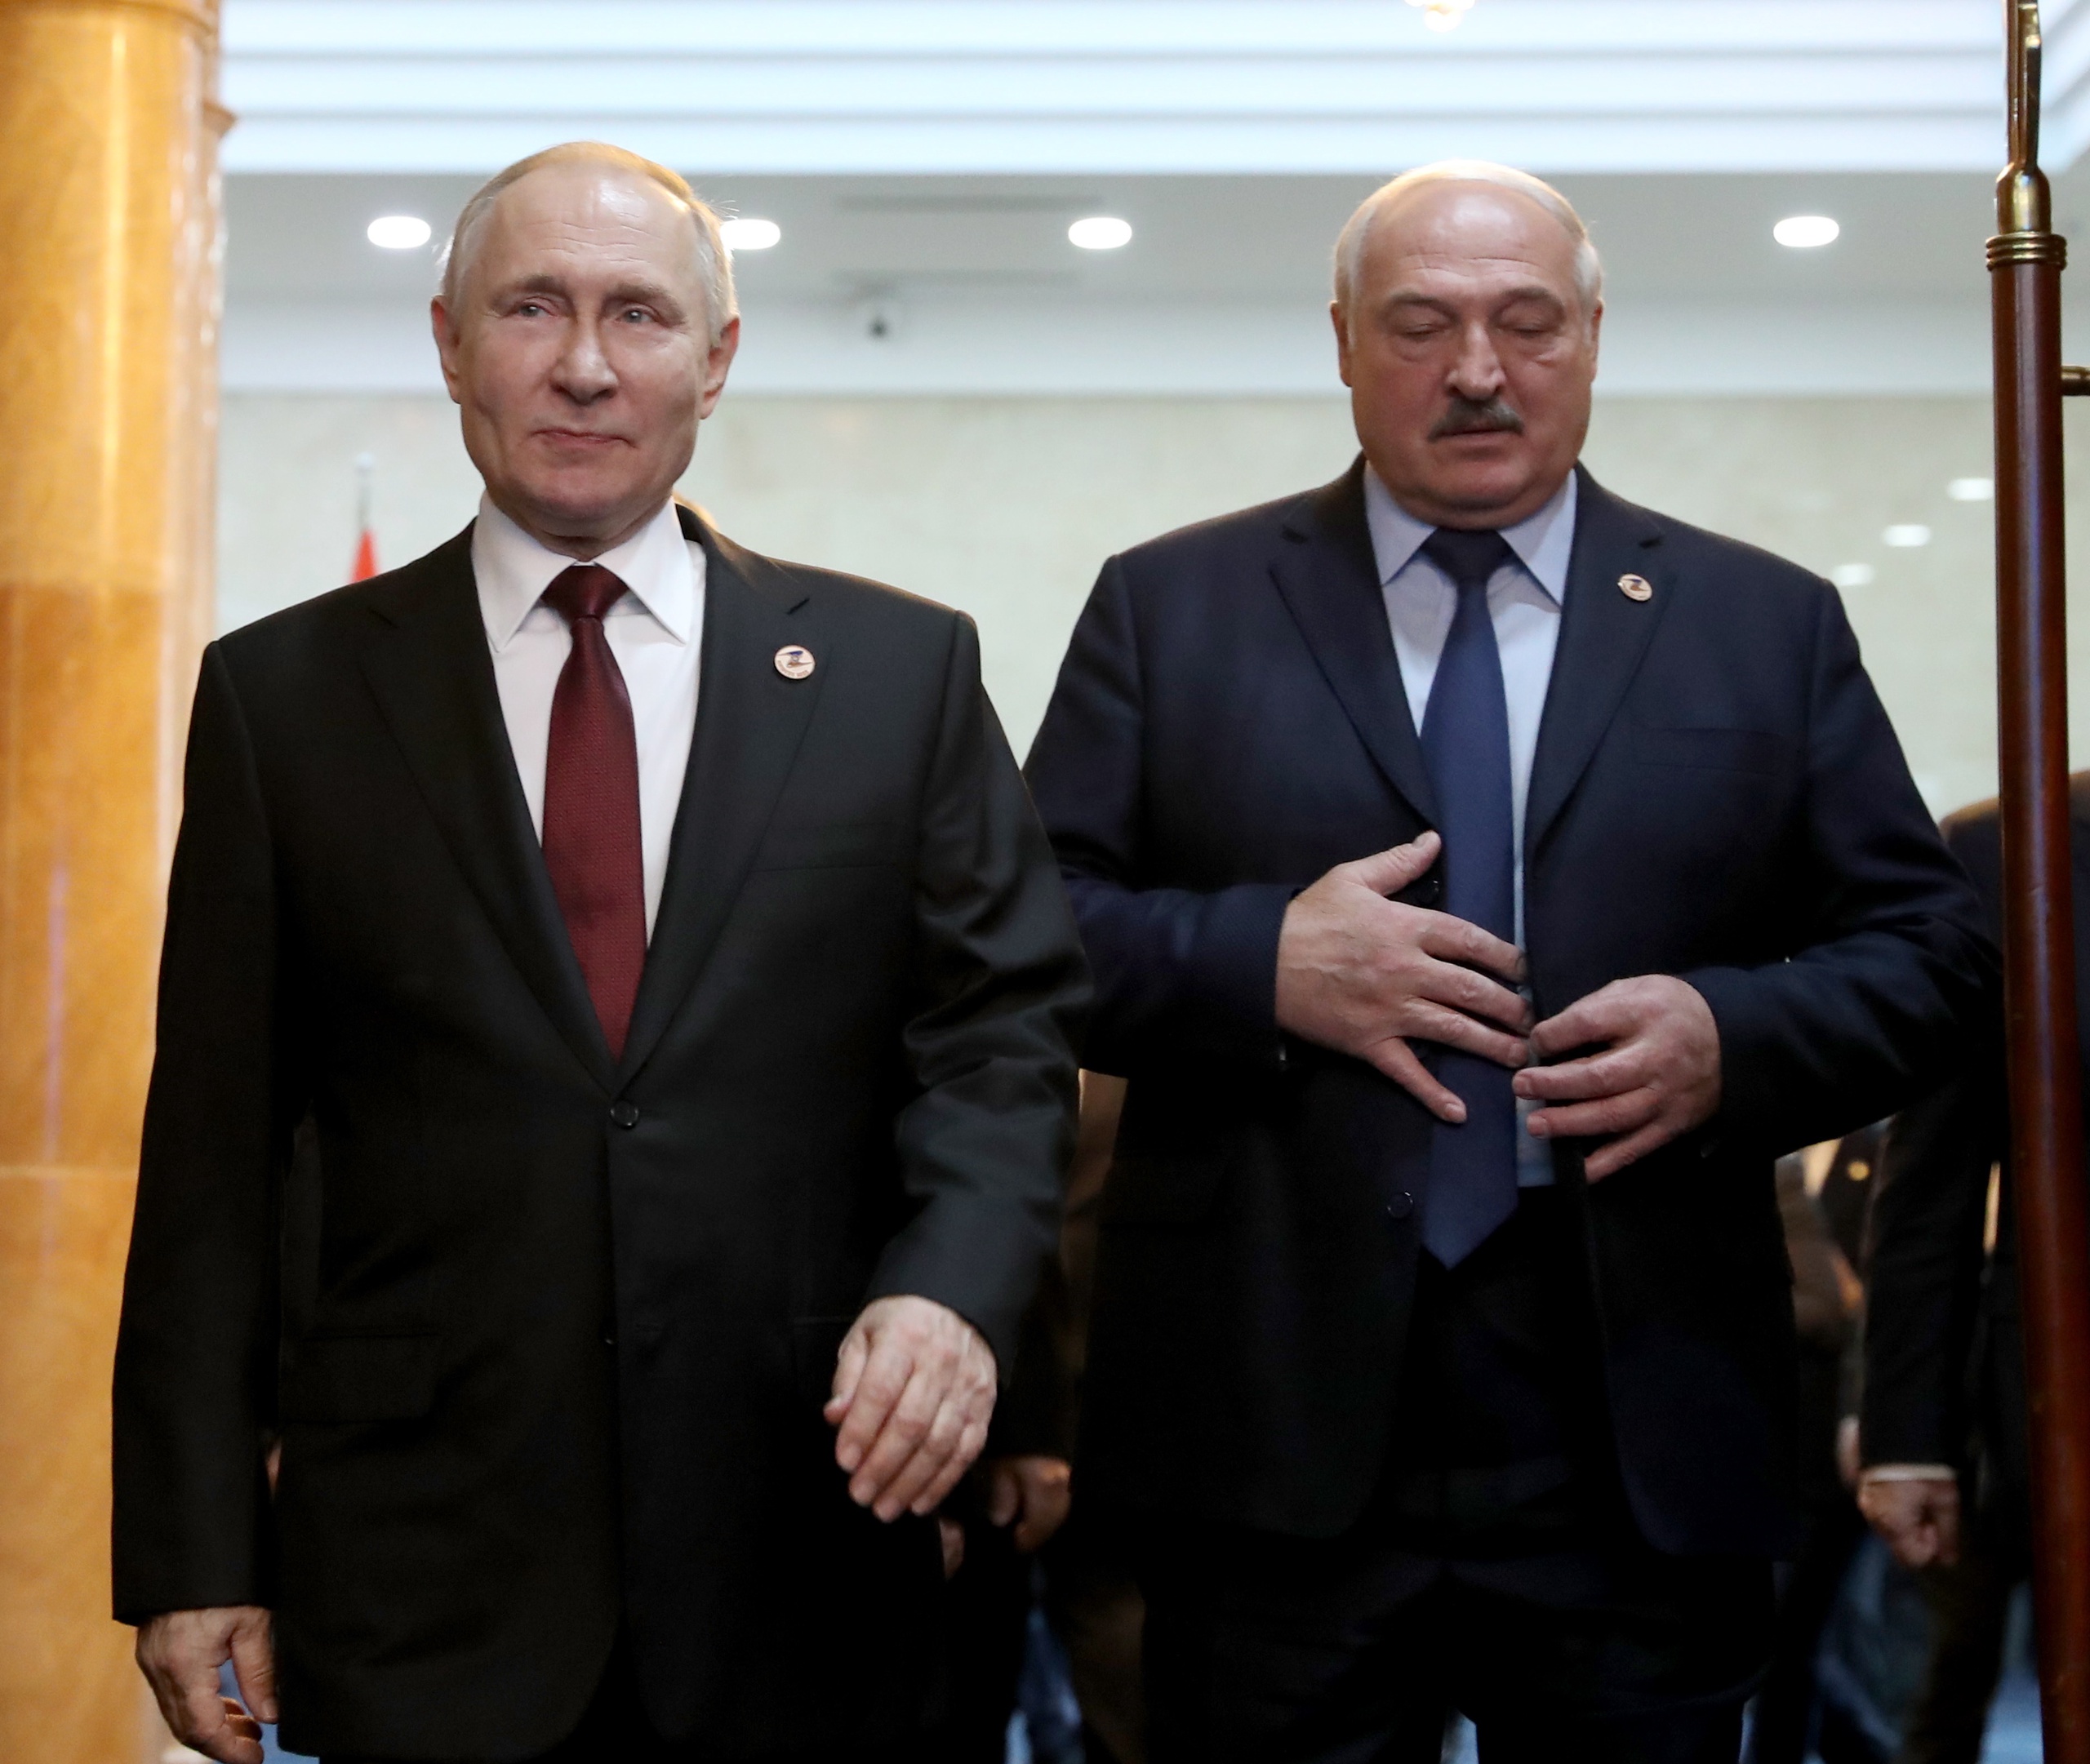 De Russische president Vladimir Poetin is in Belarus voor zijn eerste bezoek aan het land sinds 2019. Belarus is een van de laatste bondgenoten van Rusland, maar het bezoek van Poetin ligt toch ongemakkelijk, denkt BNR's buitenlandcommentator Bernard Hammelburg.